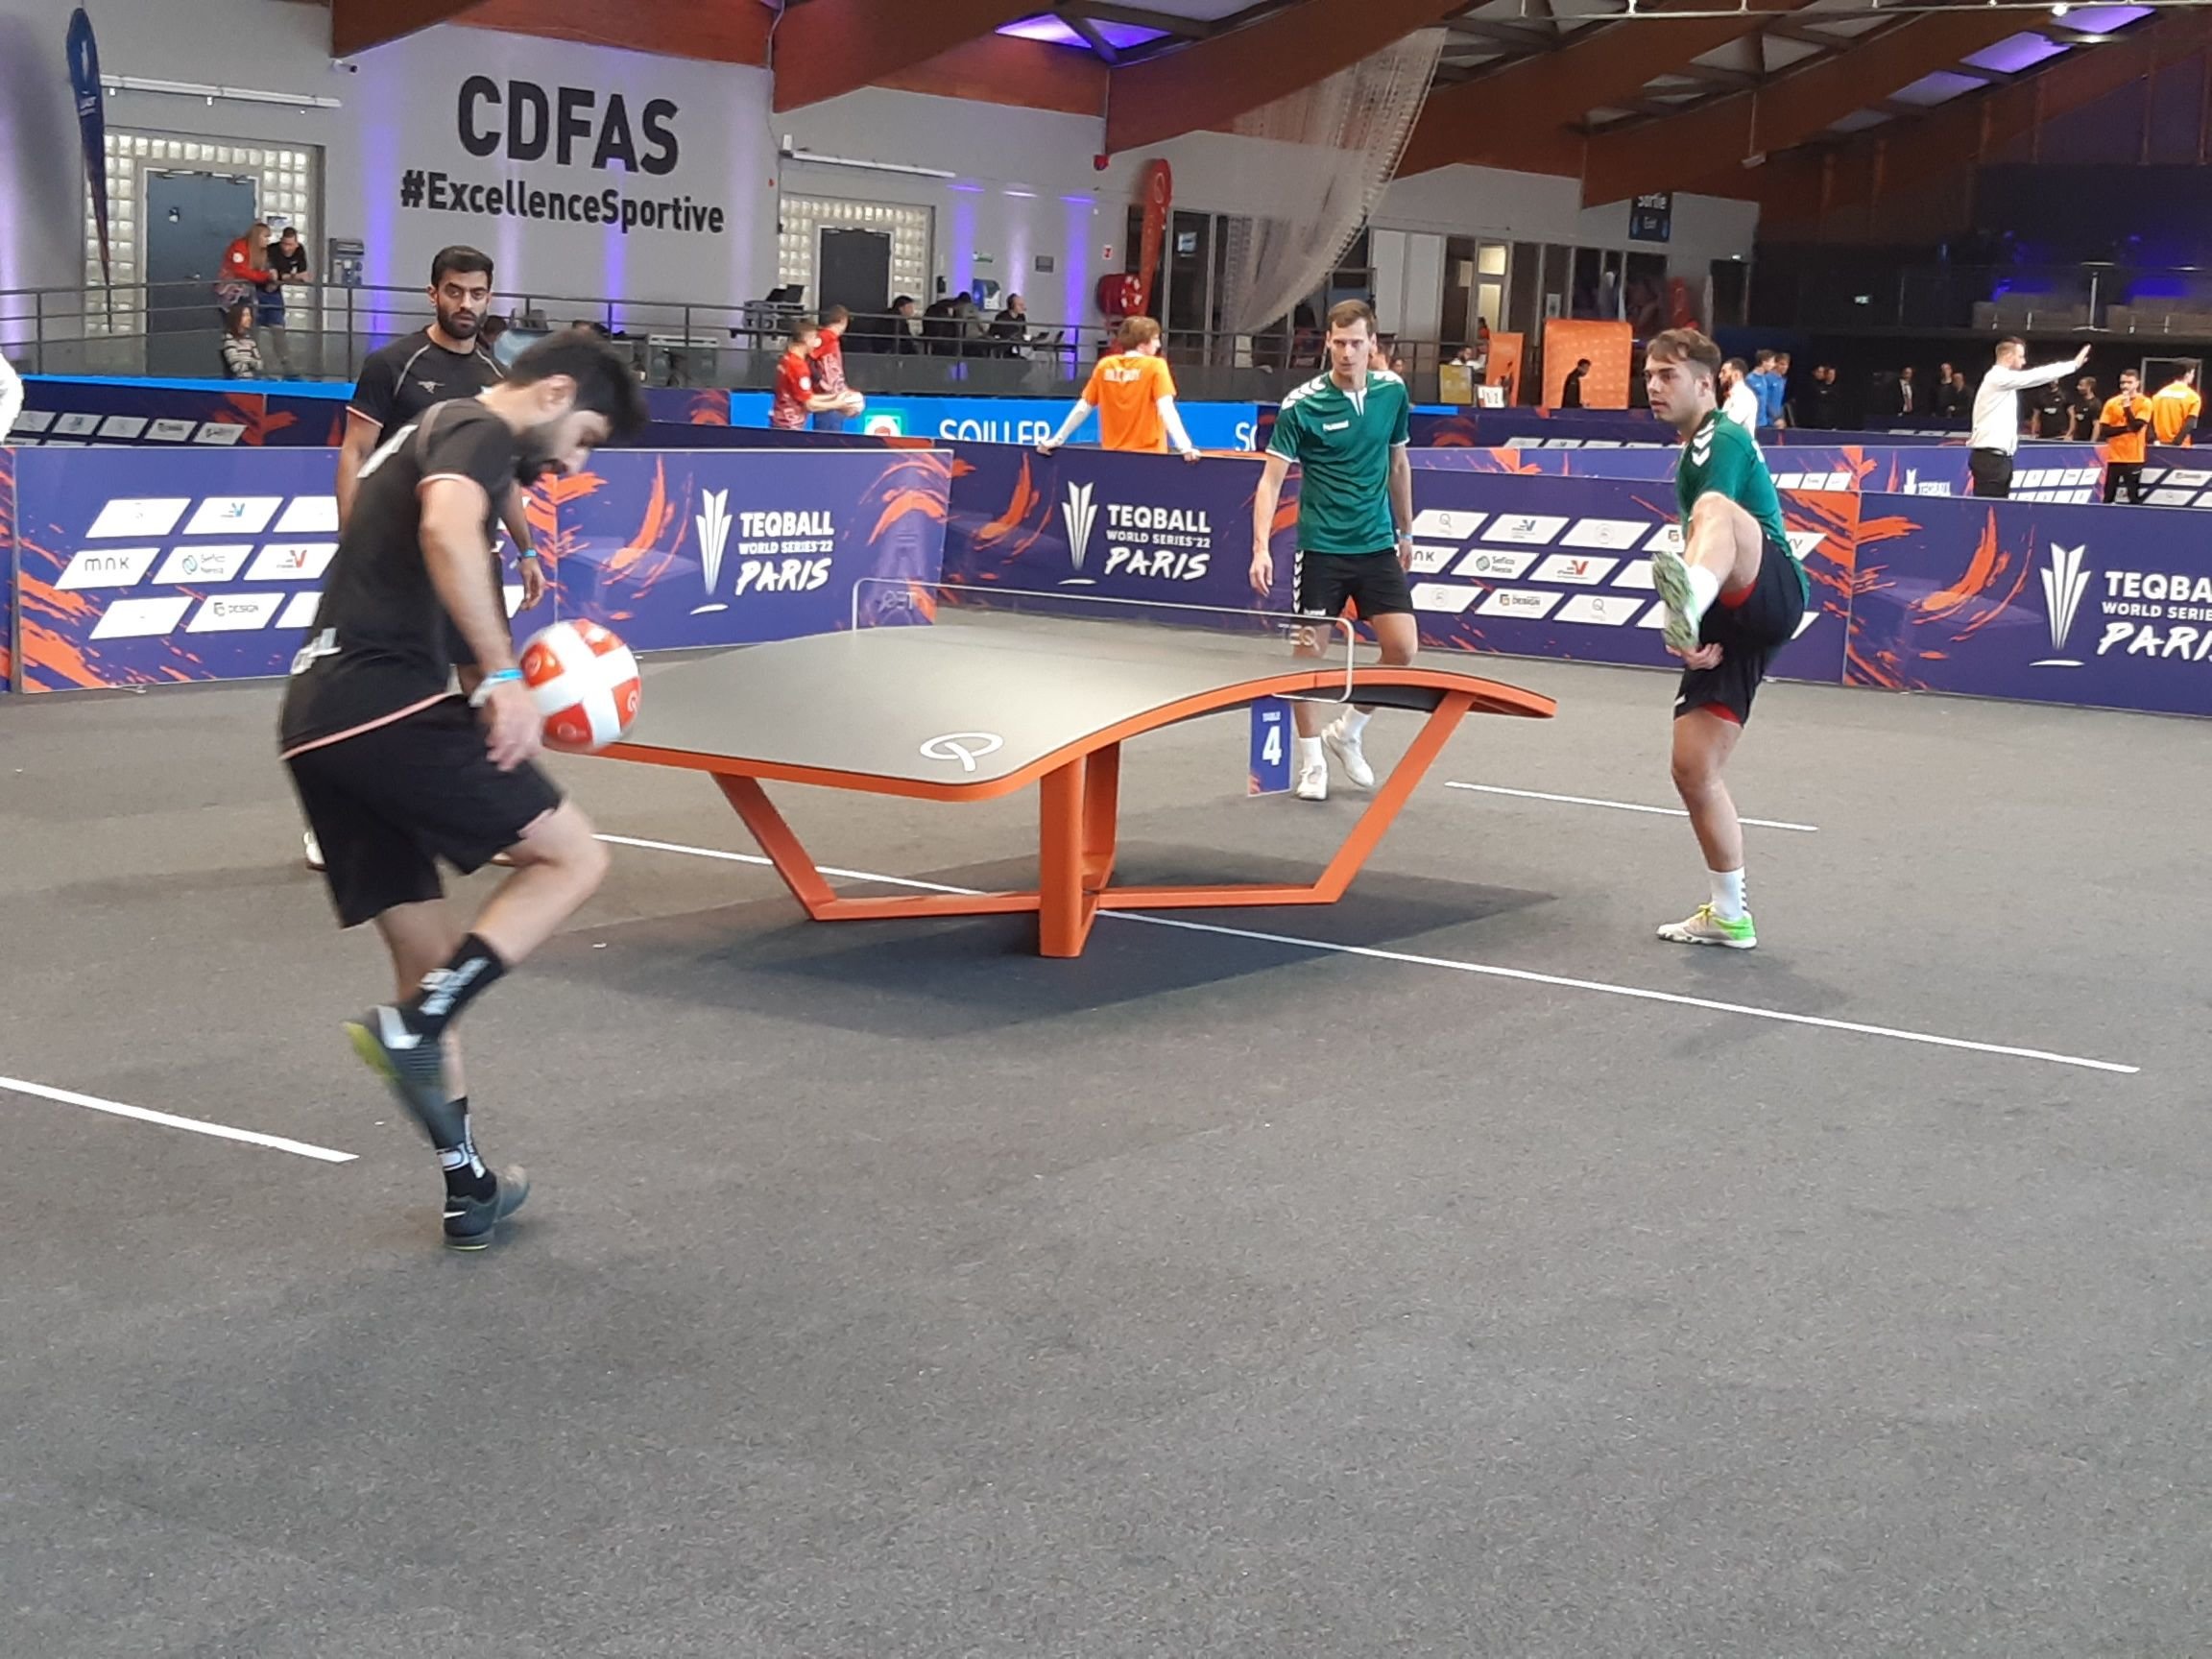 Le CDFAS accueille durant trois jours une compétition mondiale de teqball, discipline spectaculaire née de la fusion entre le football et le tennis de table. LP/Christophe Lefèvre